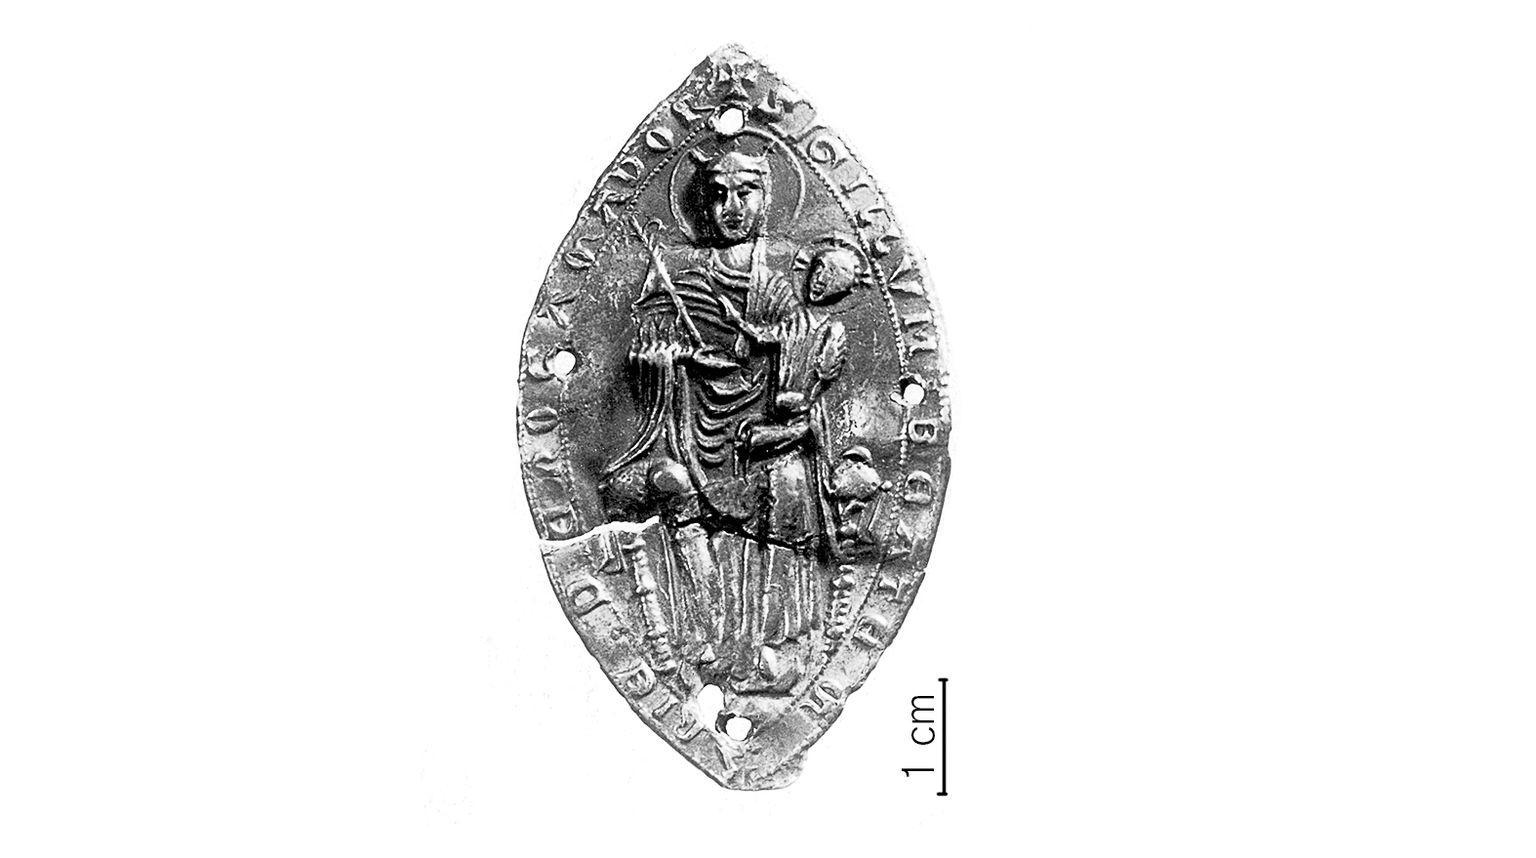 Seni ainus arheoloogiline tõend 13. sajandi tallinlaste palverännakuist on 1953. aastal Raekoja platsilt leitud Rocamadouri palverännusuveniir